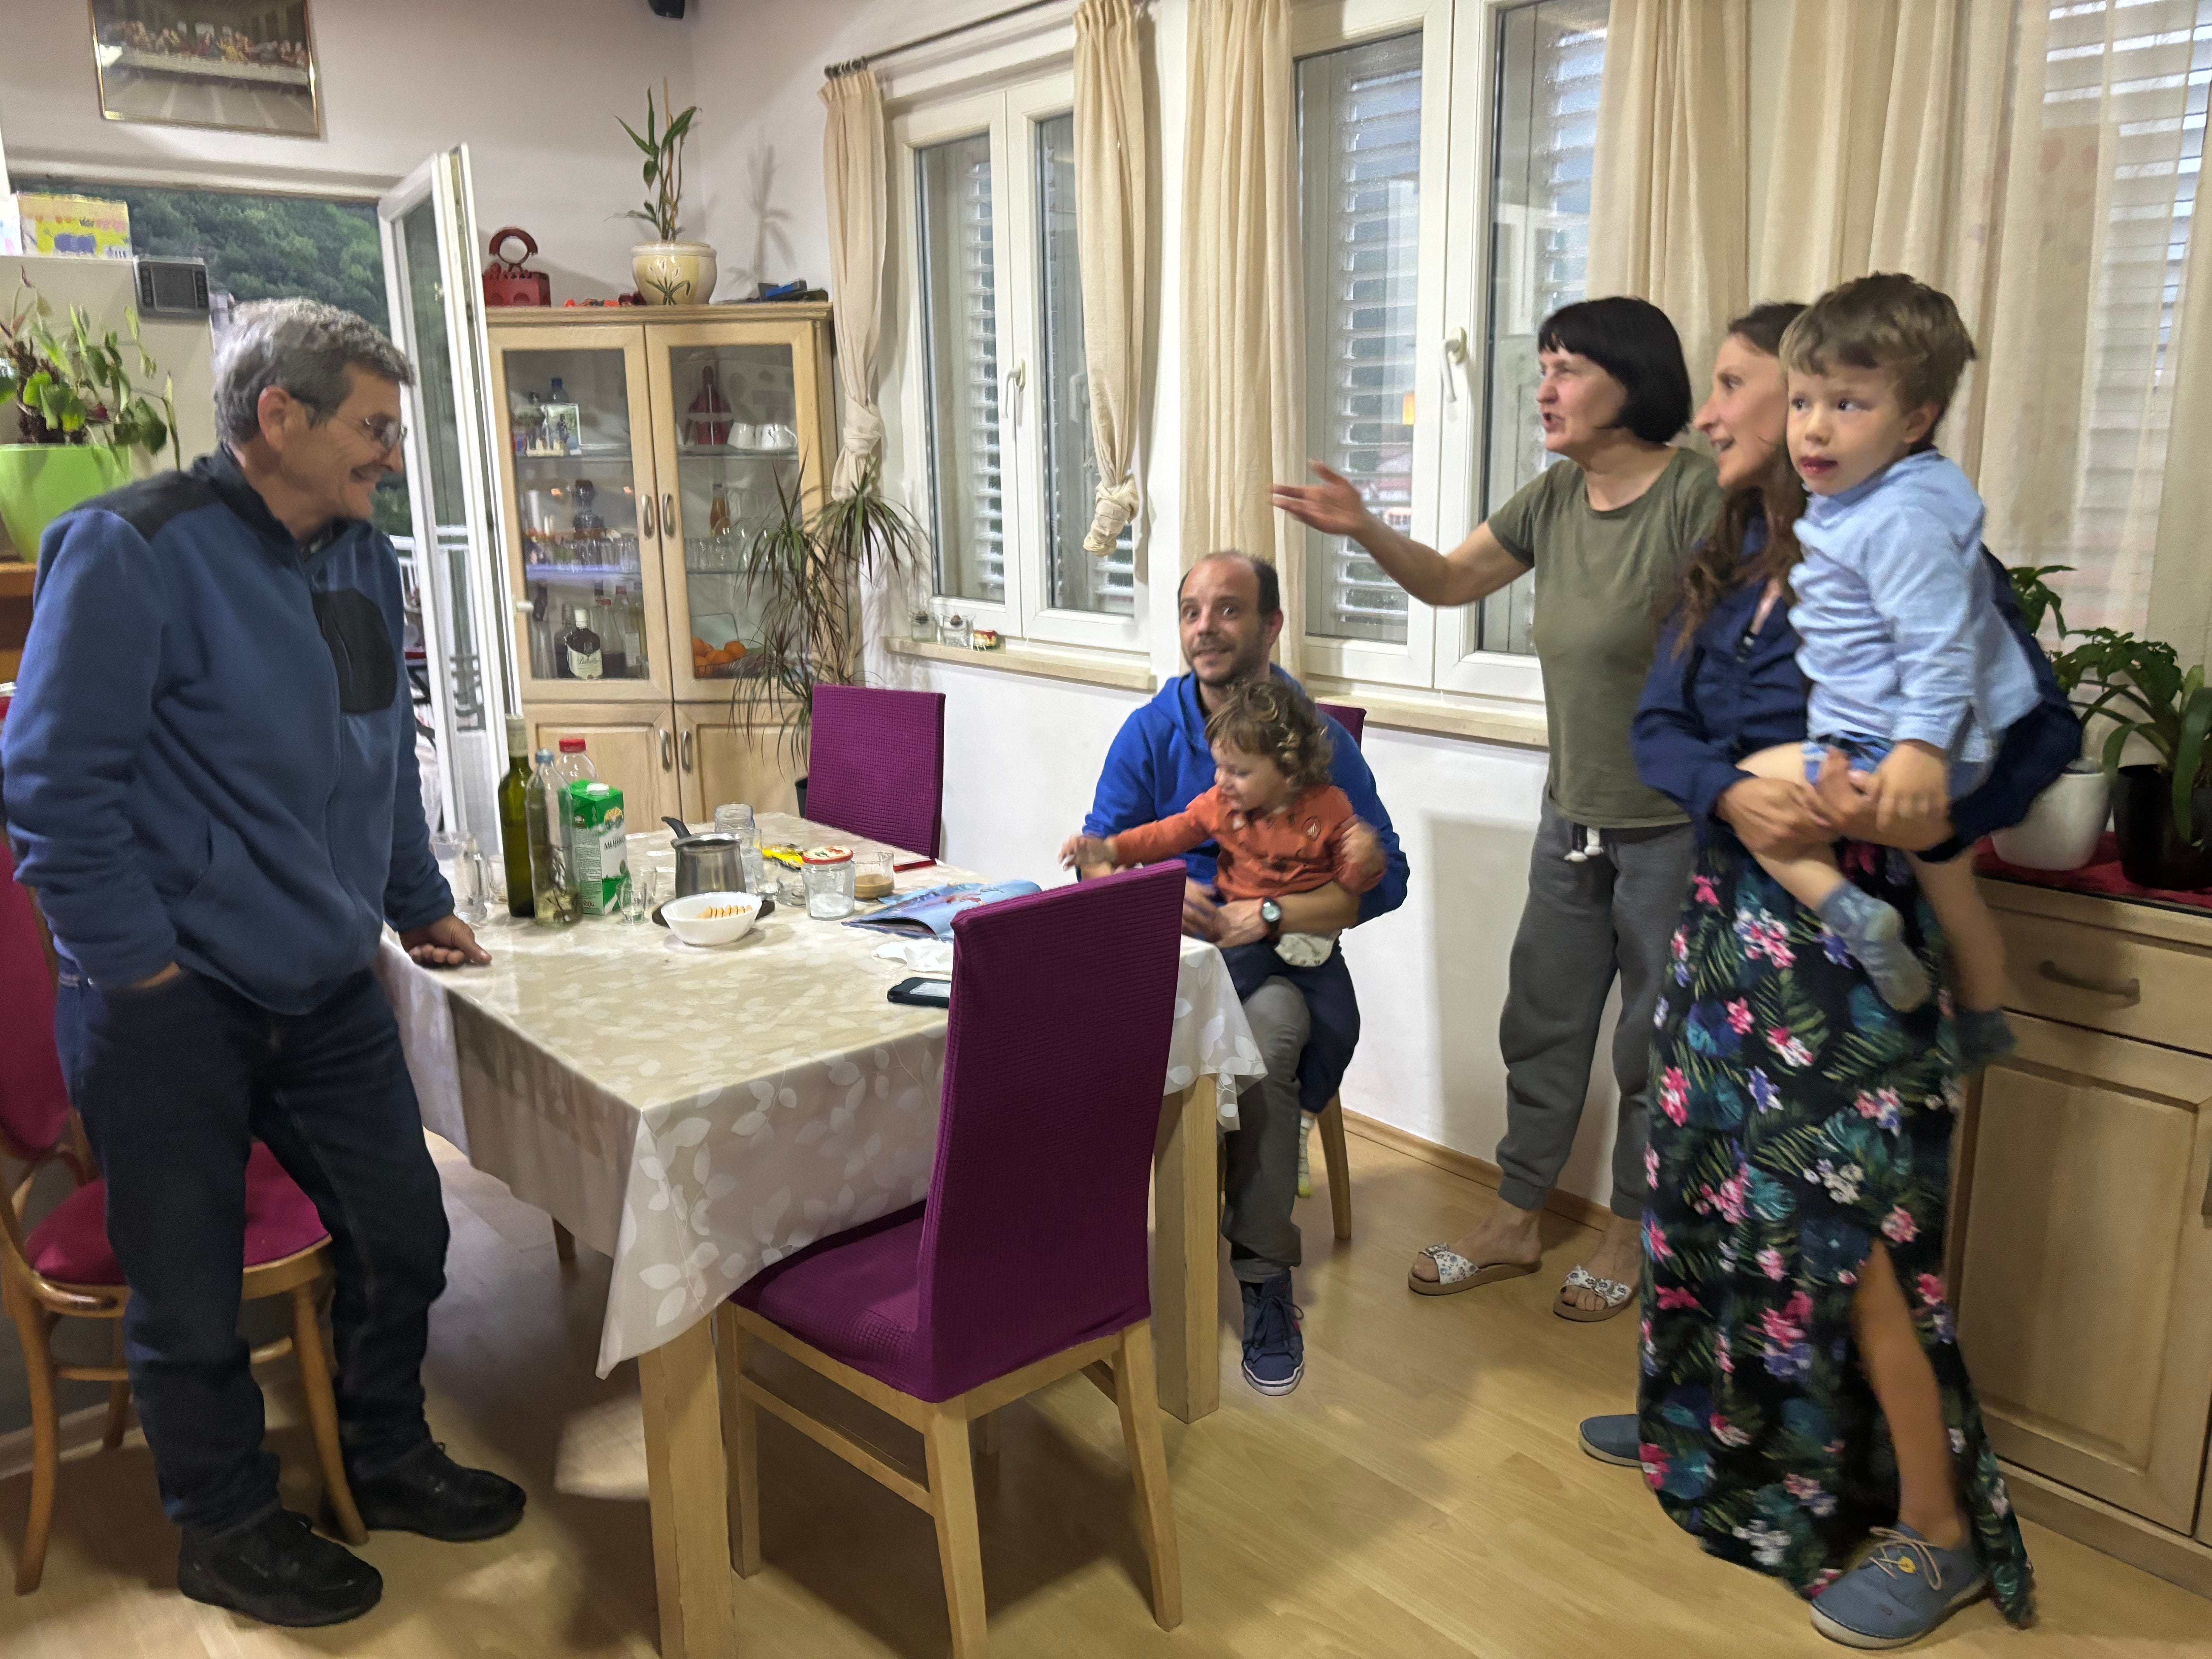 Bogdan Nicolae Dascalescu, Diana Marlais, ihre Kinder und ihre Eltern verbringen den Abend gemeinsam in ihrem Haus.